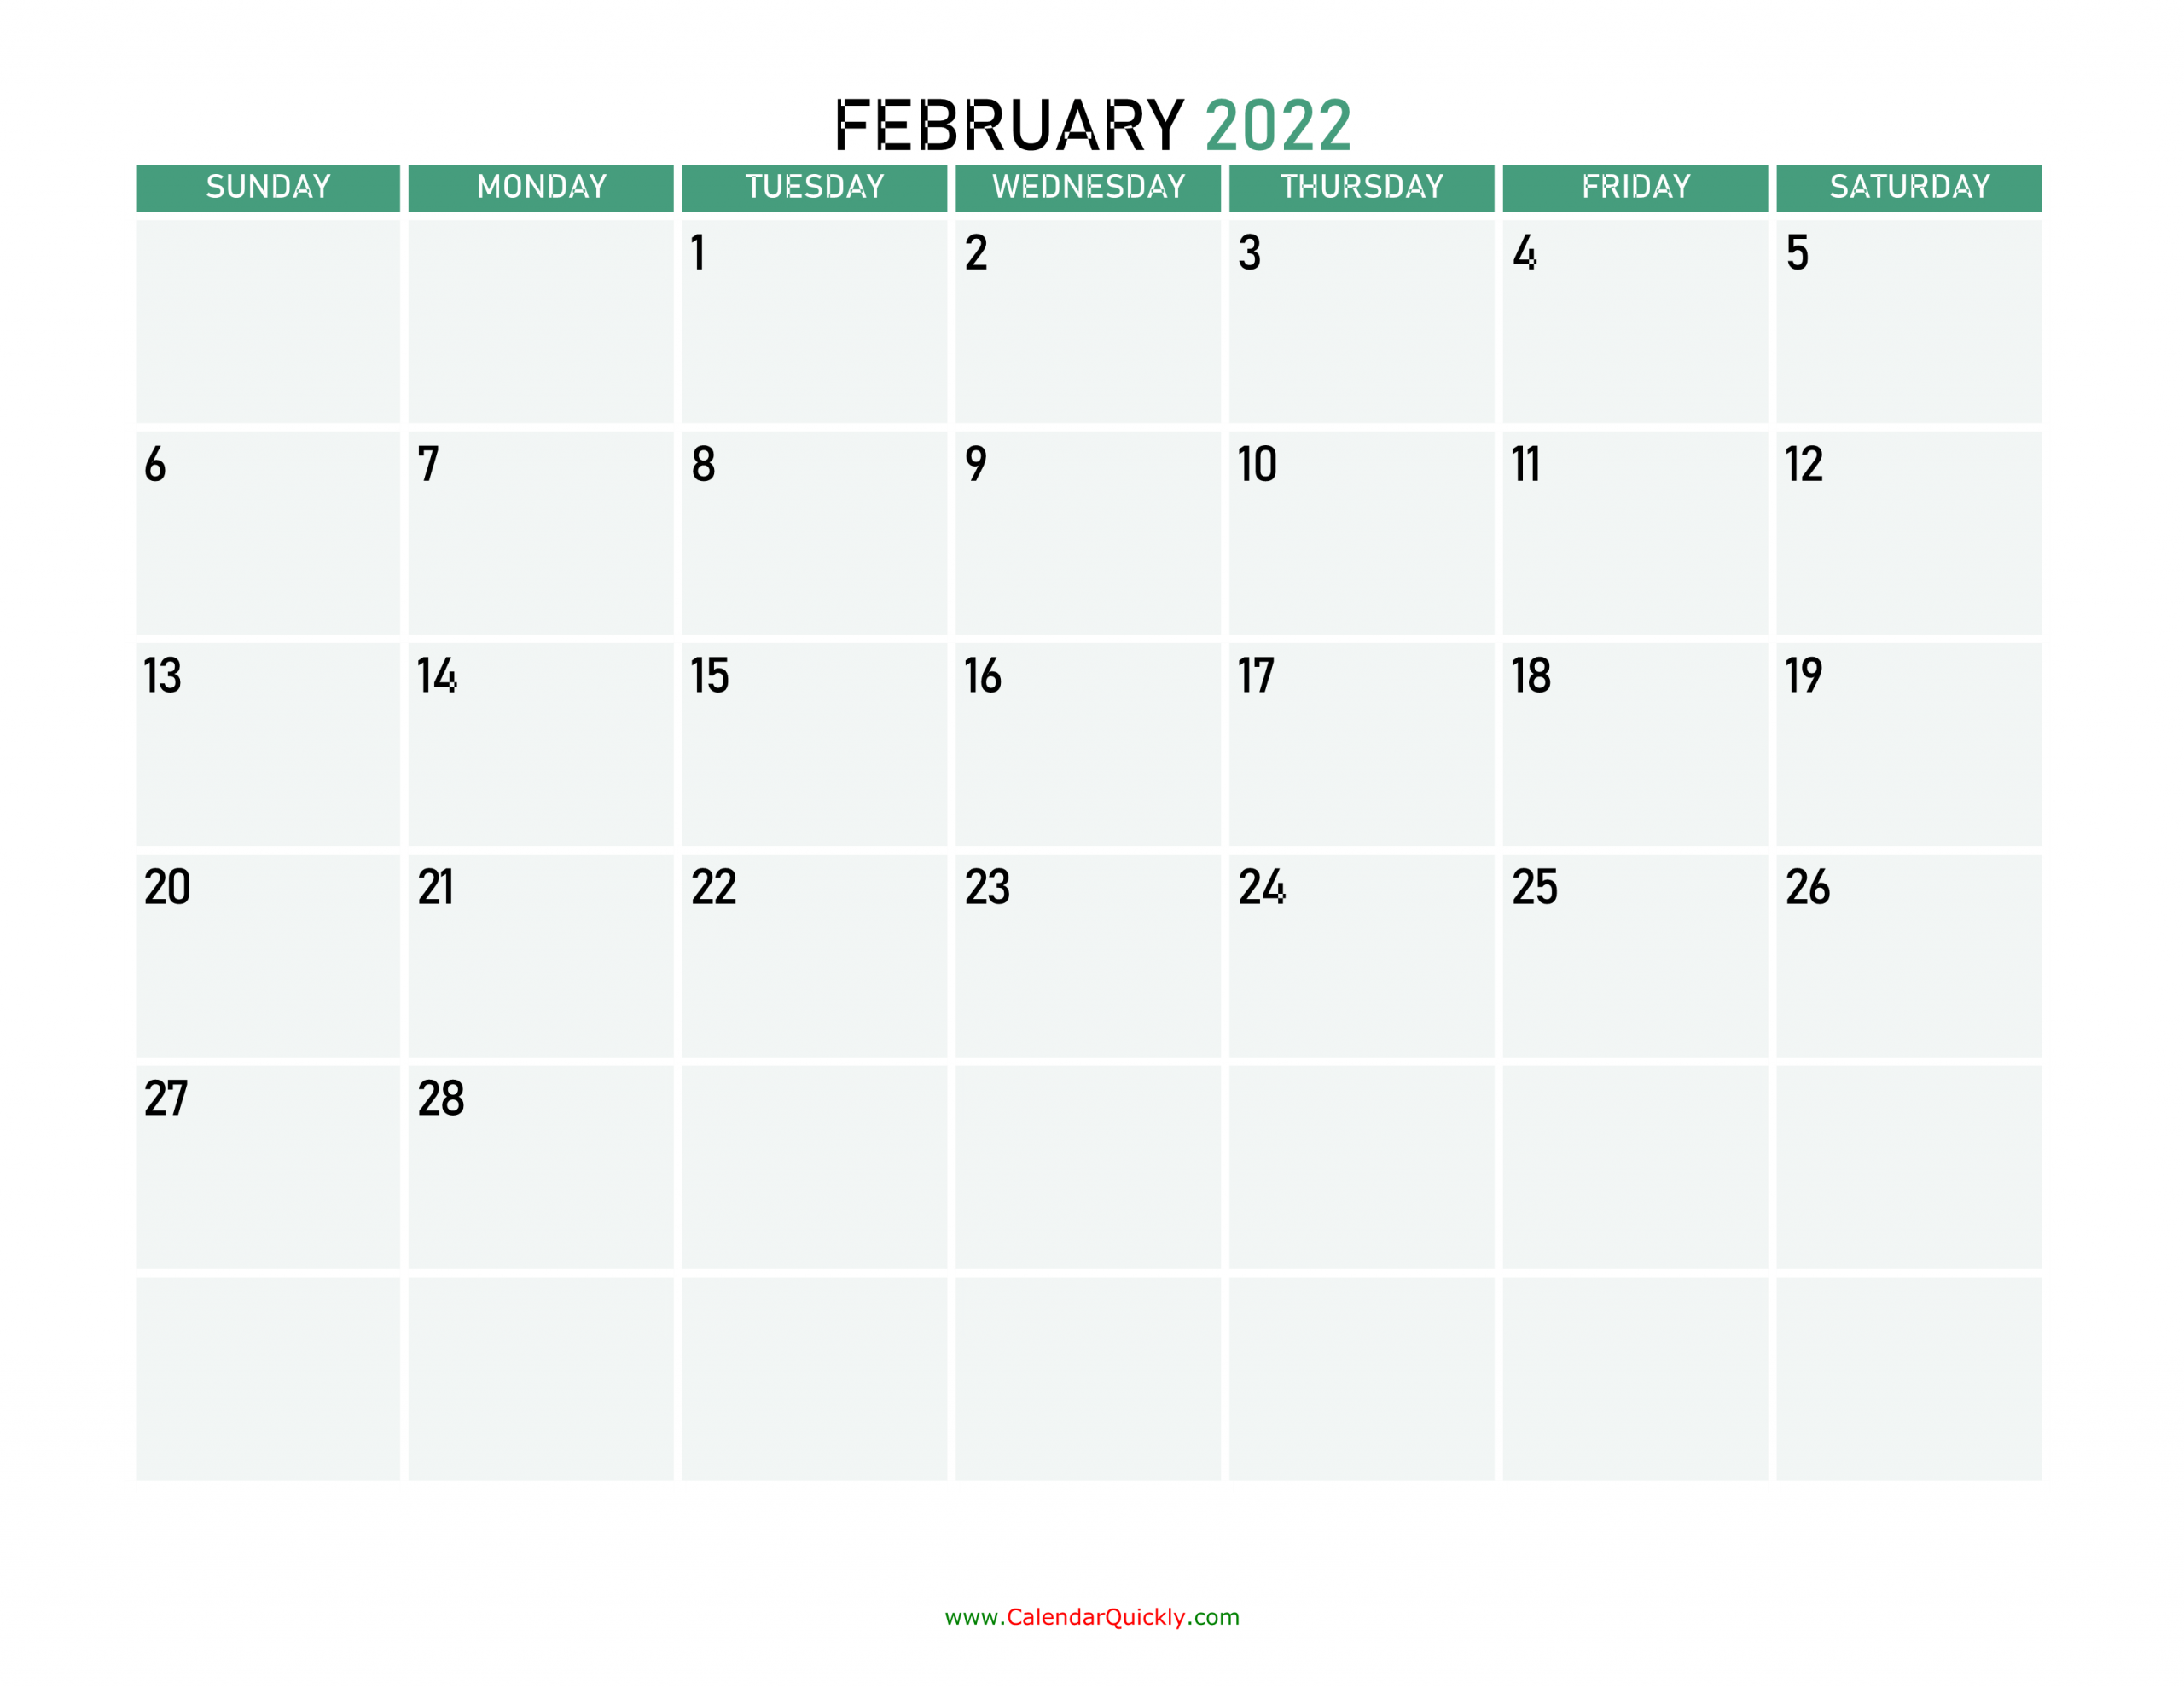 February 2022 Calendars | Calendar Quickly